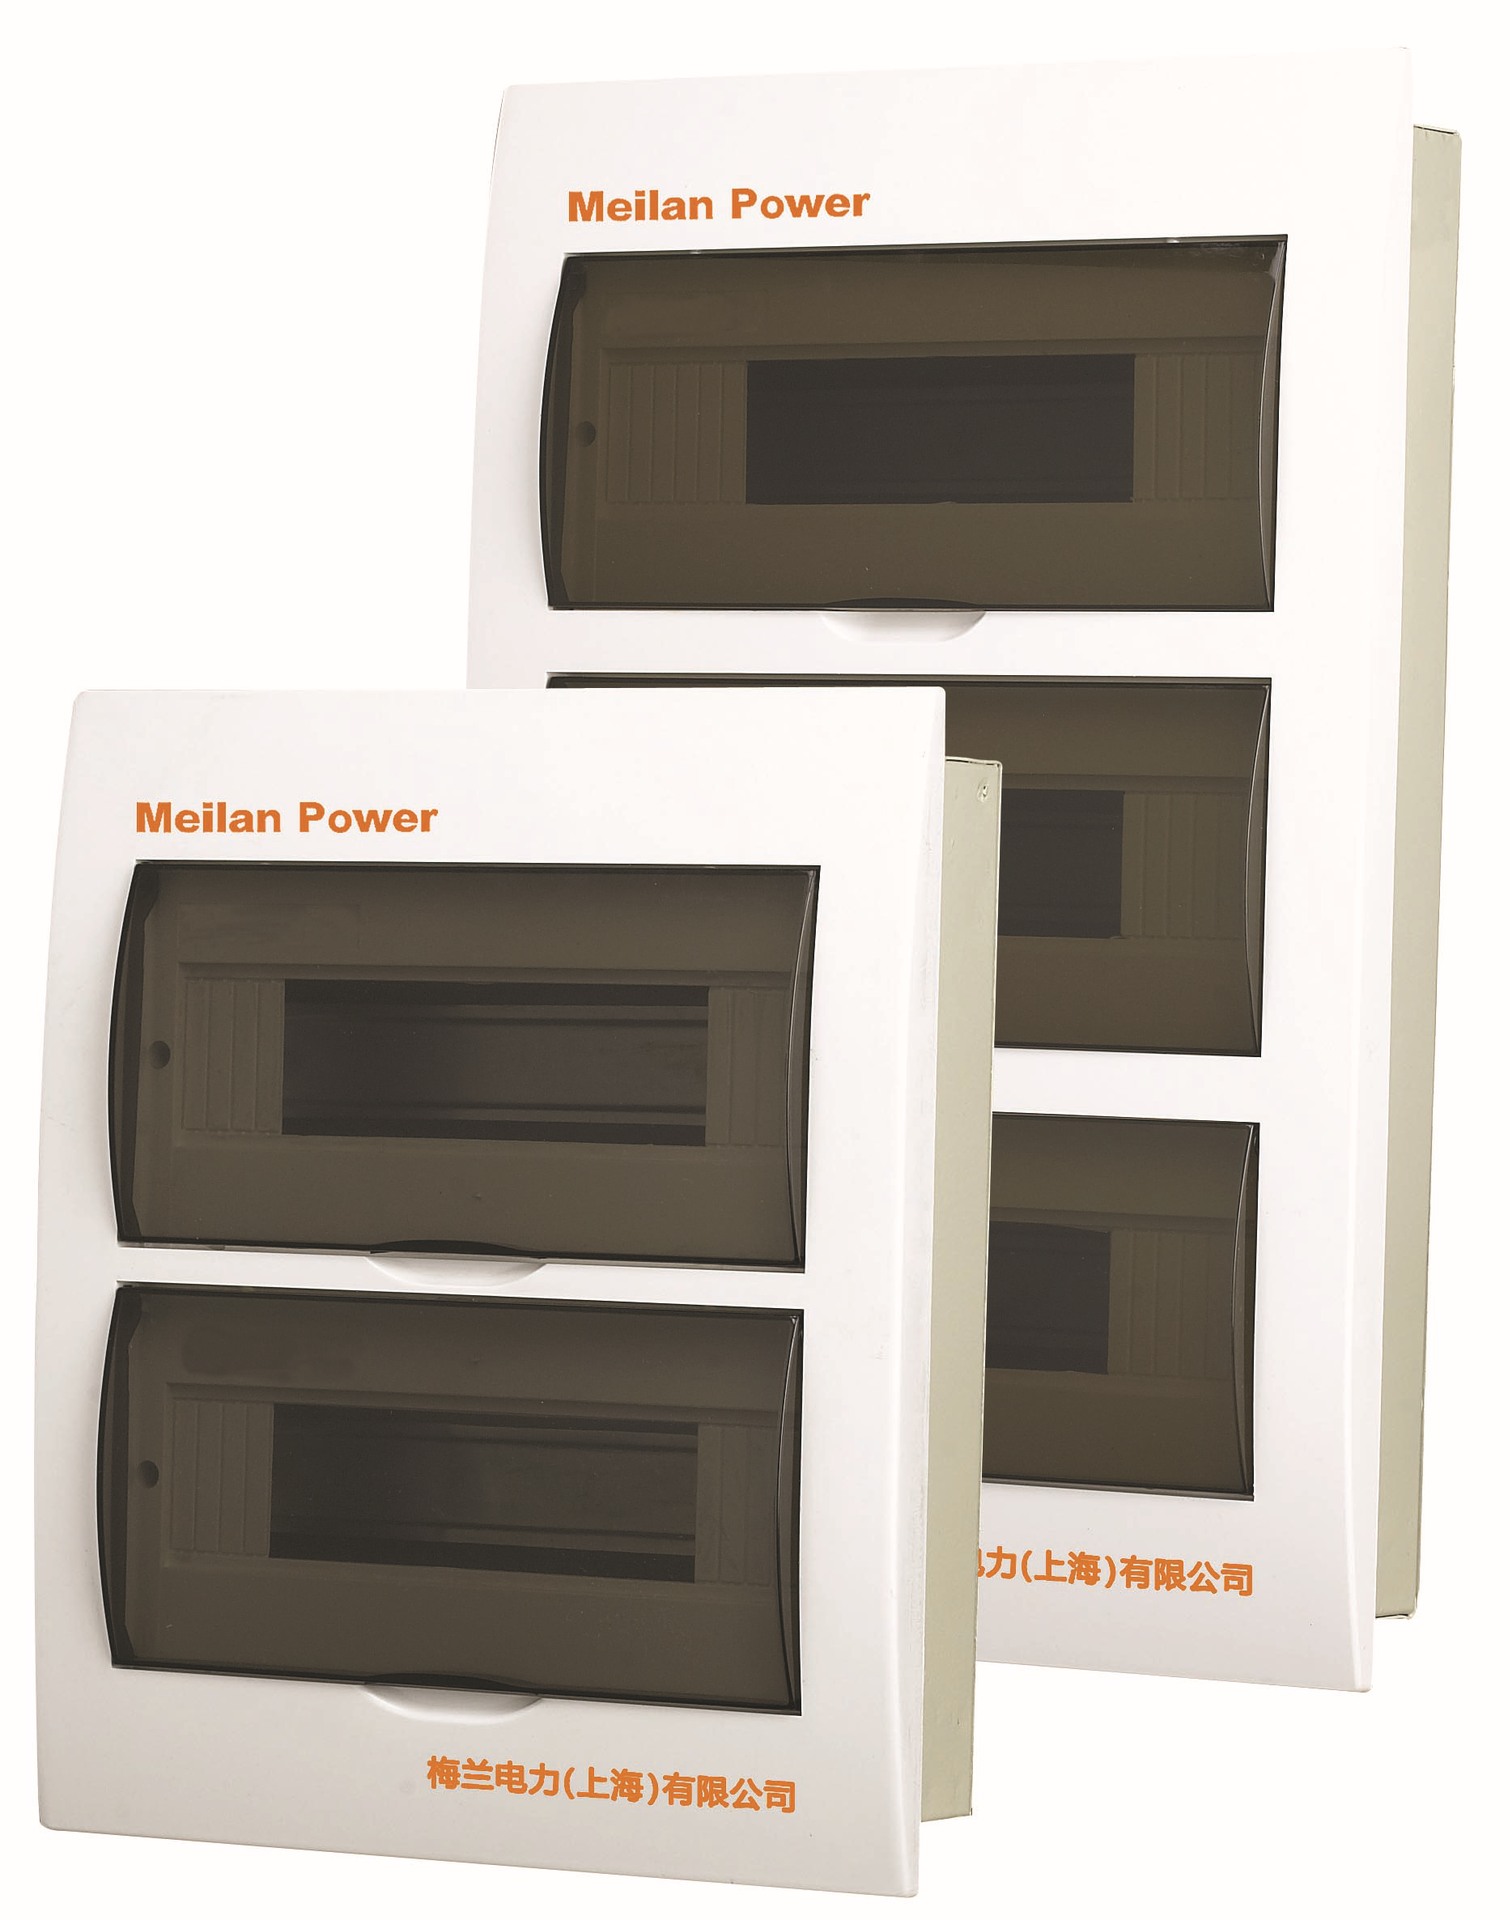 供应E-BOX照明箱系列,暗装配电箱,金属配电箱